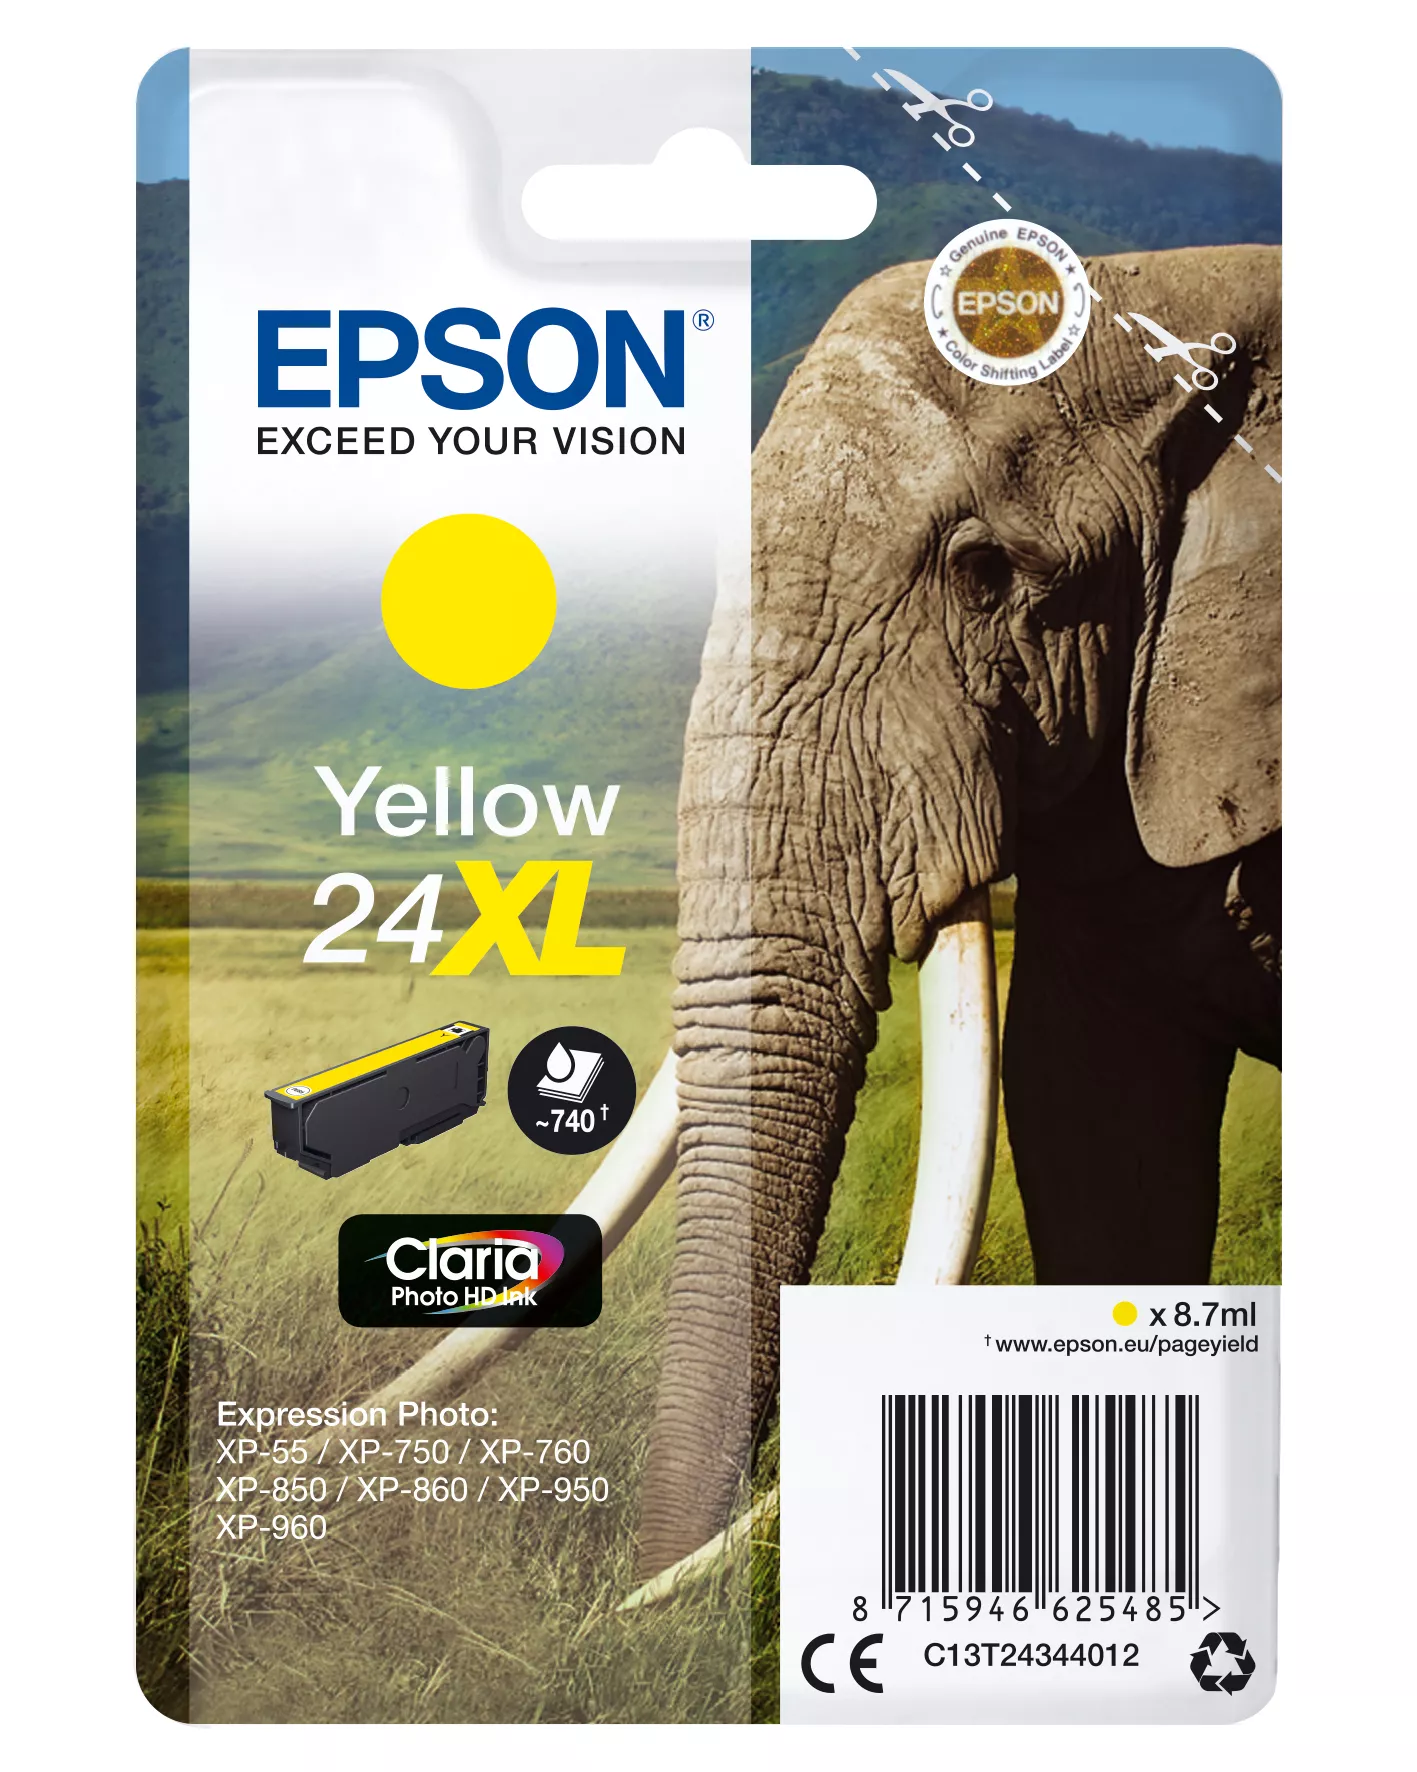 Achat EPSON 24XL cartouche dencre jaune haute capacité 8.7ml au meilleur prix